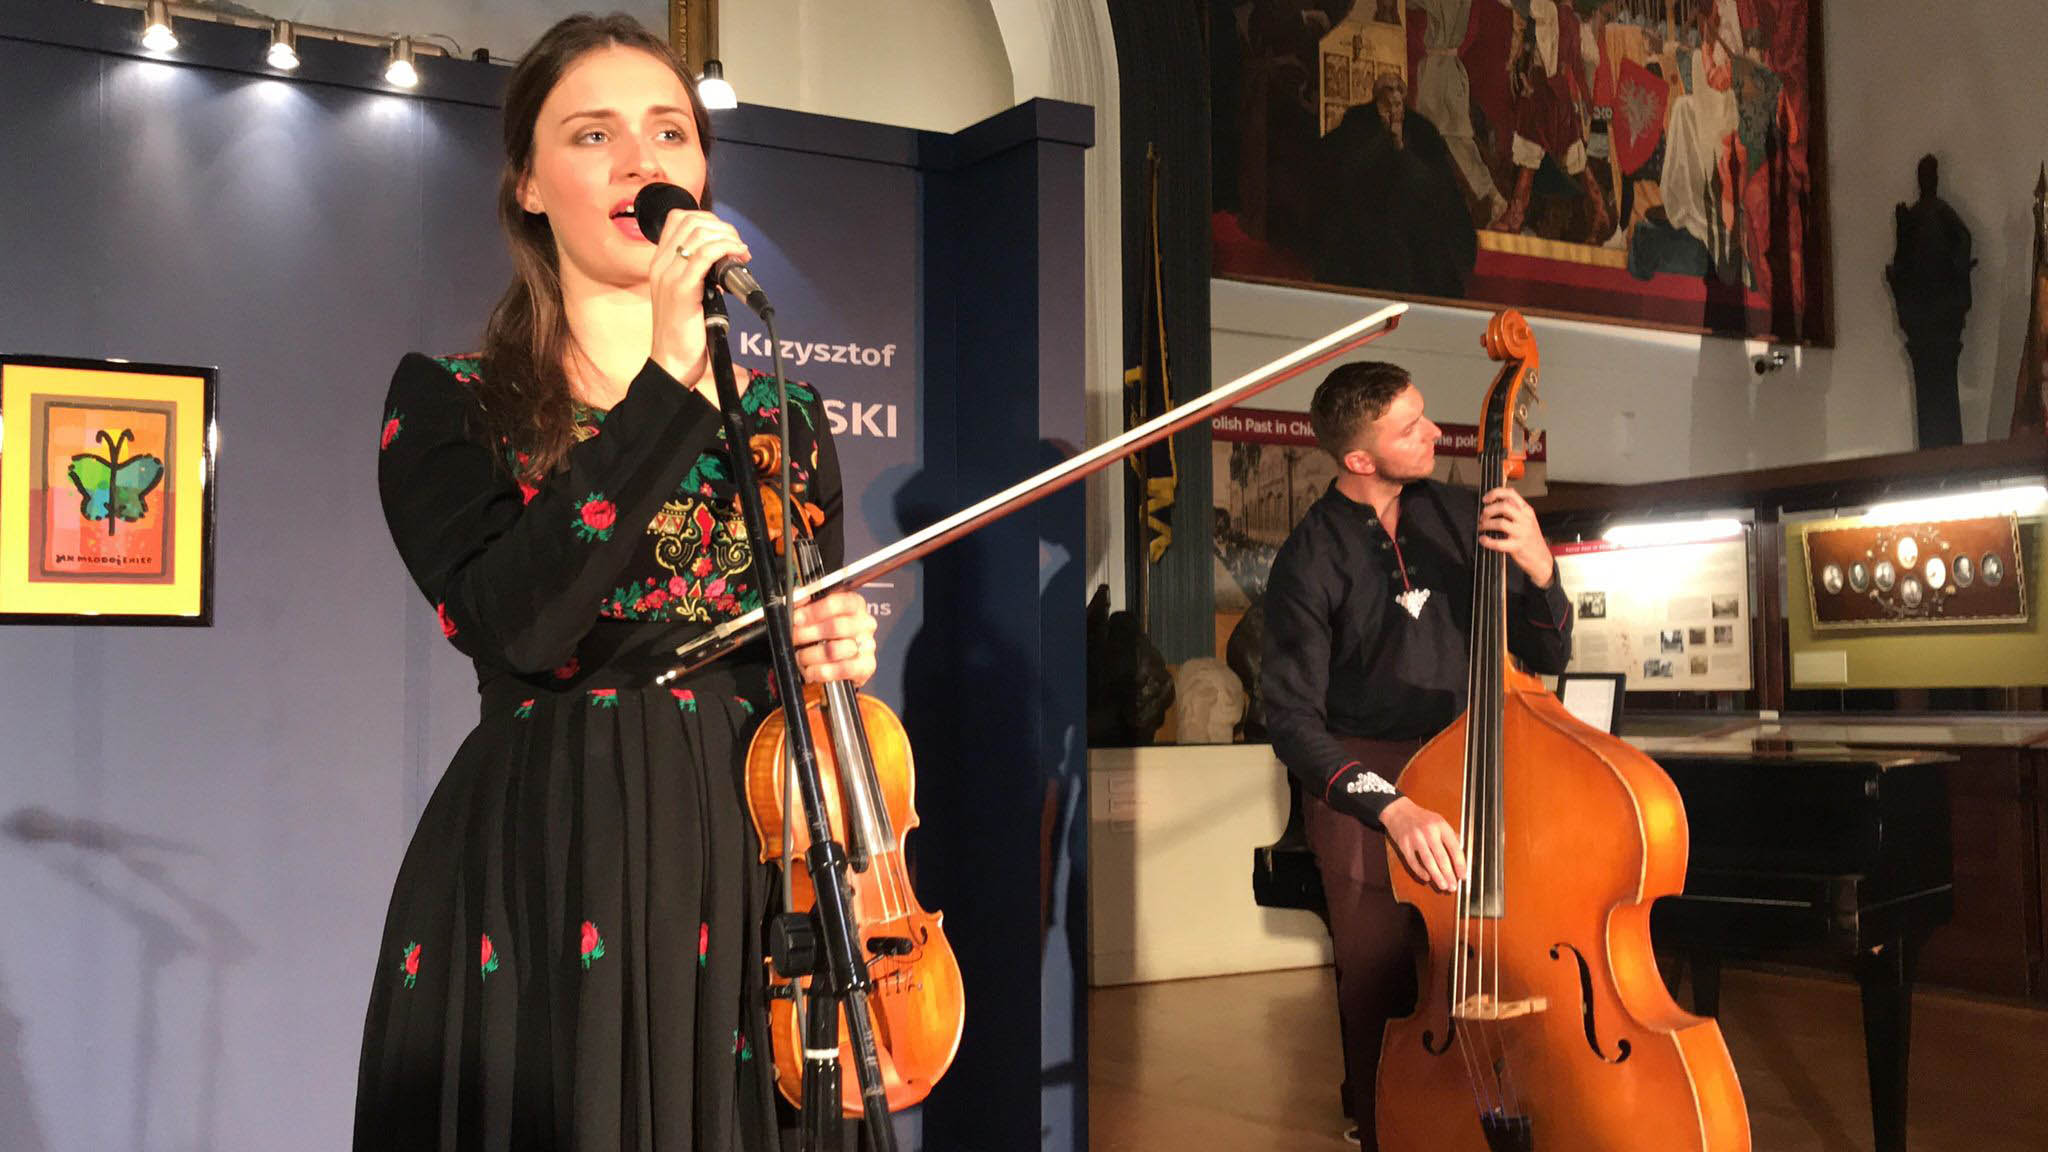 TEKLA KLEBETNICA performed at the PMA